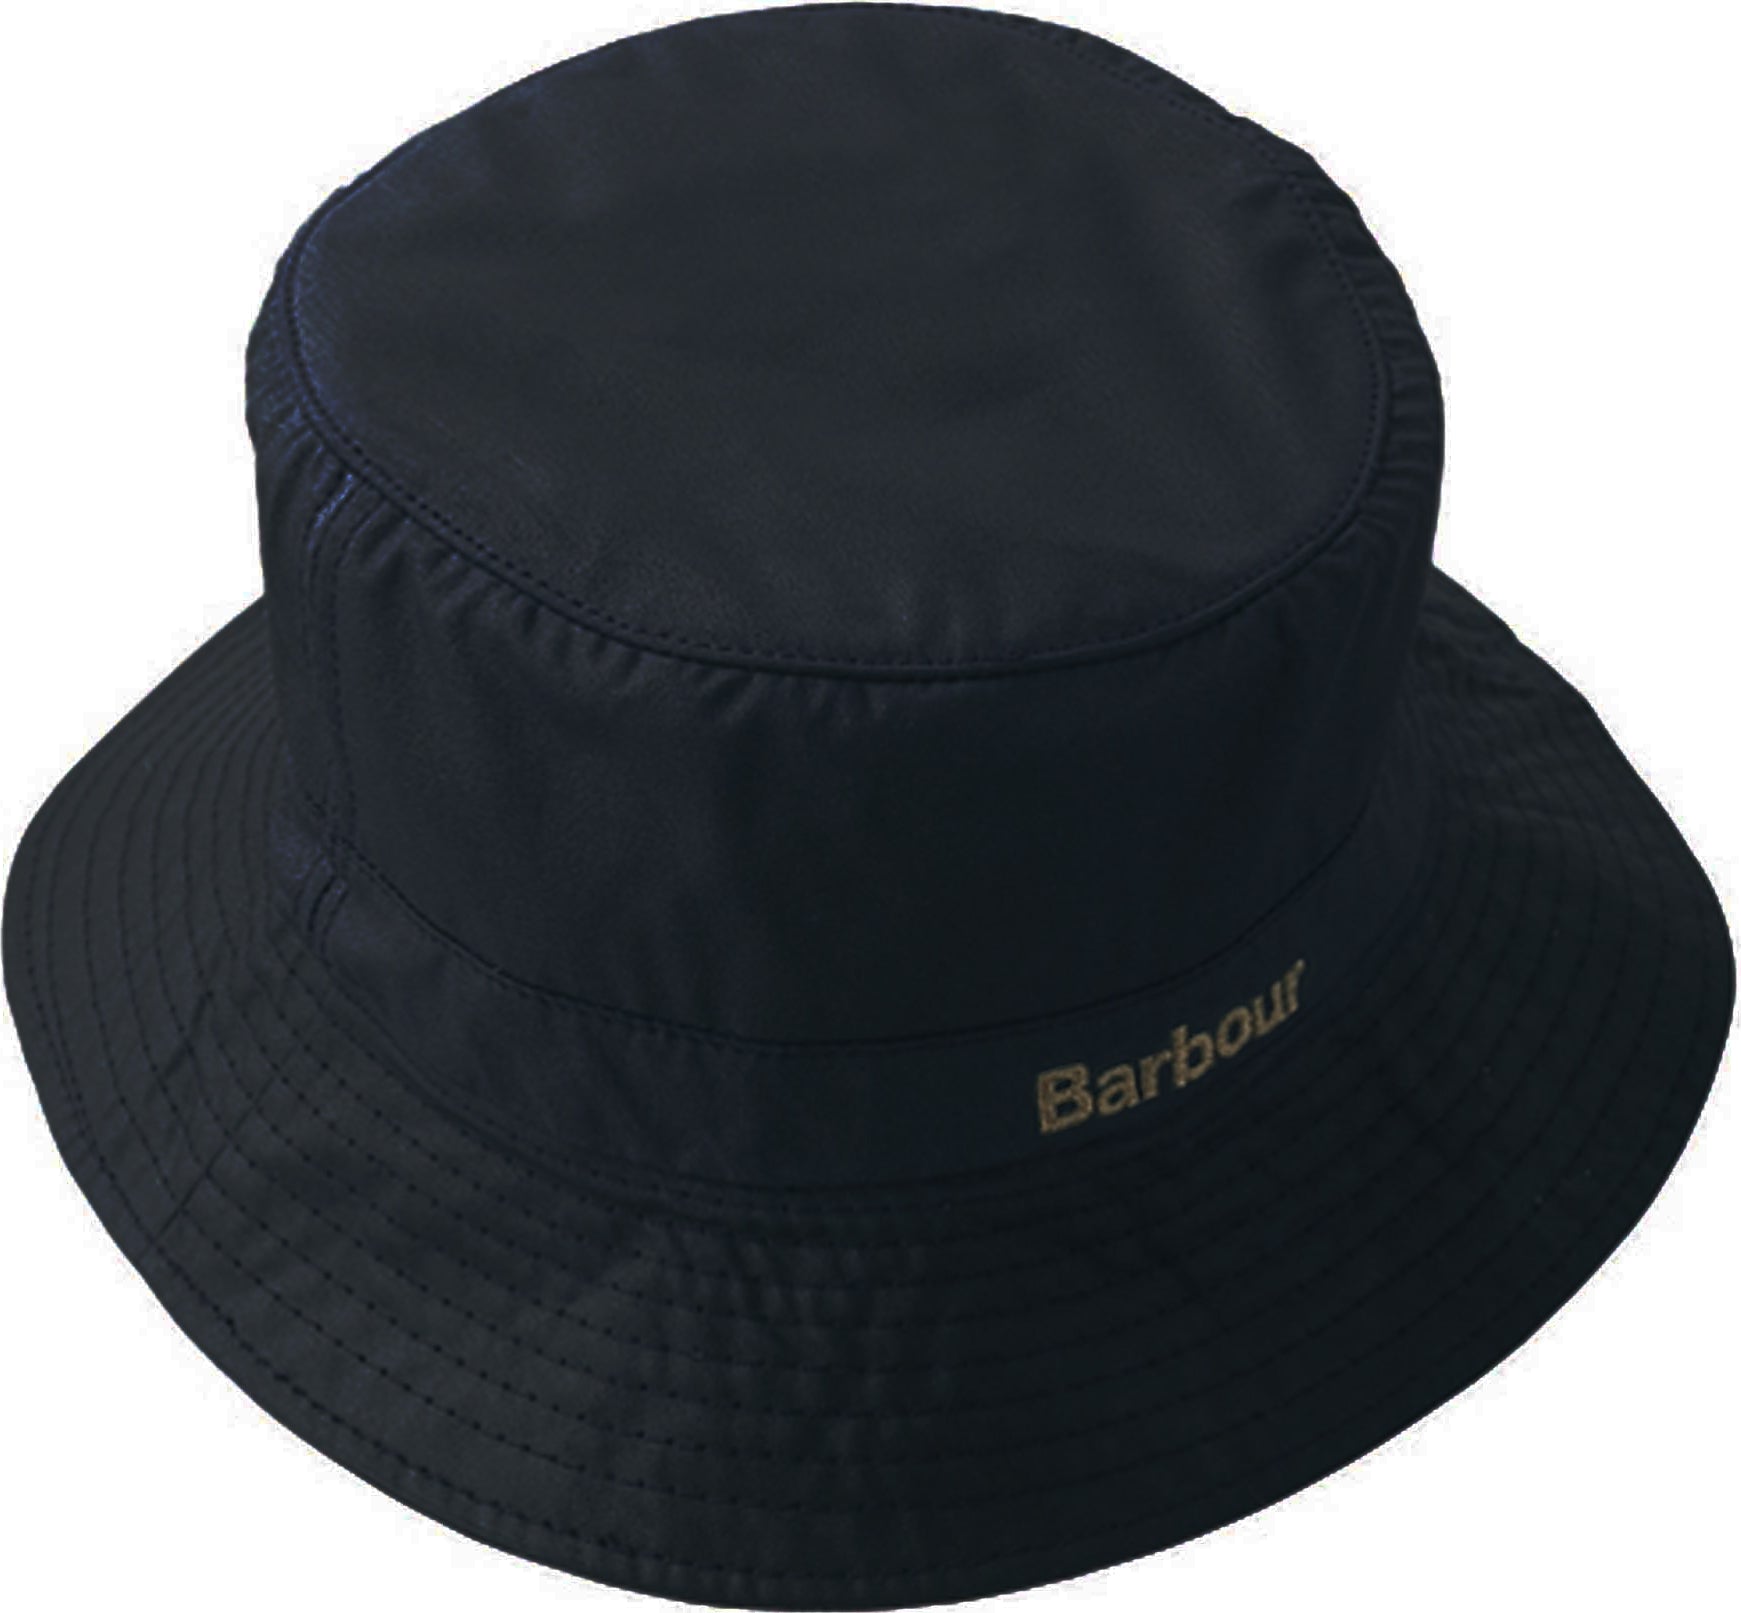 Barbour Wax Sports Hat - Men's S Navy